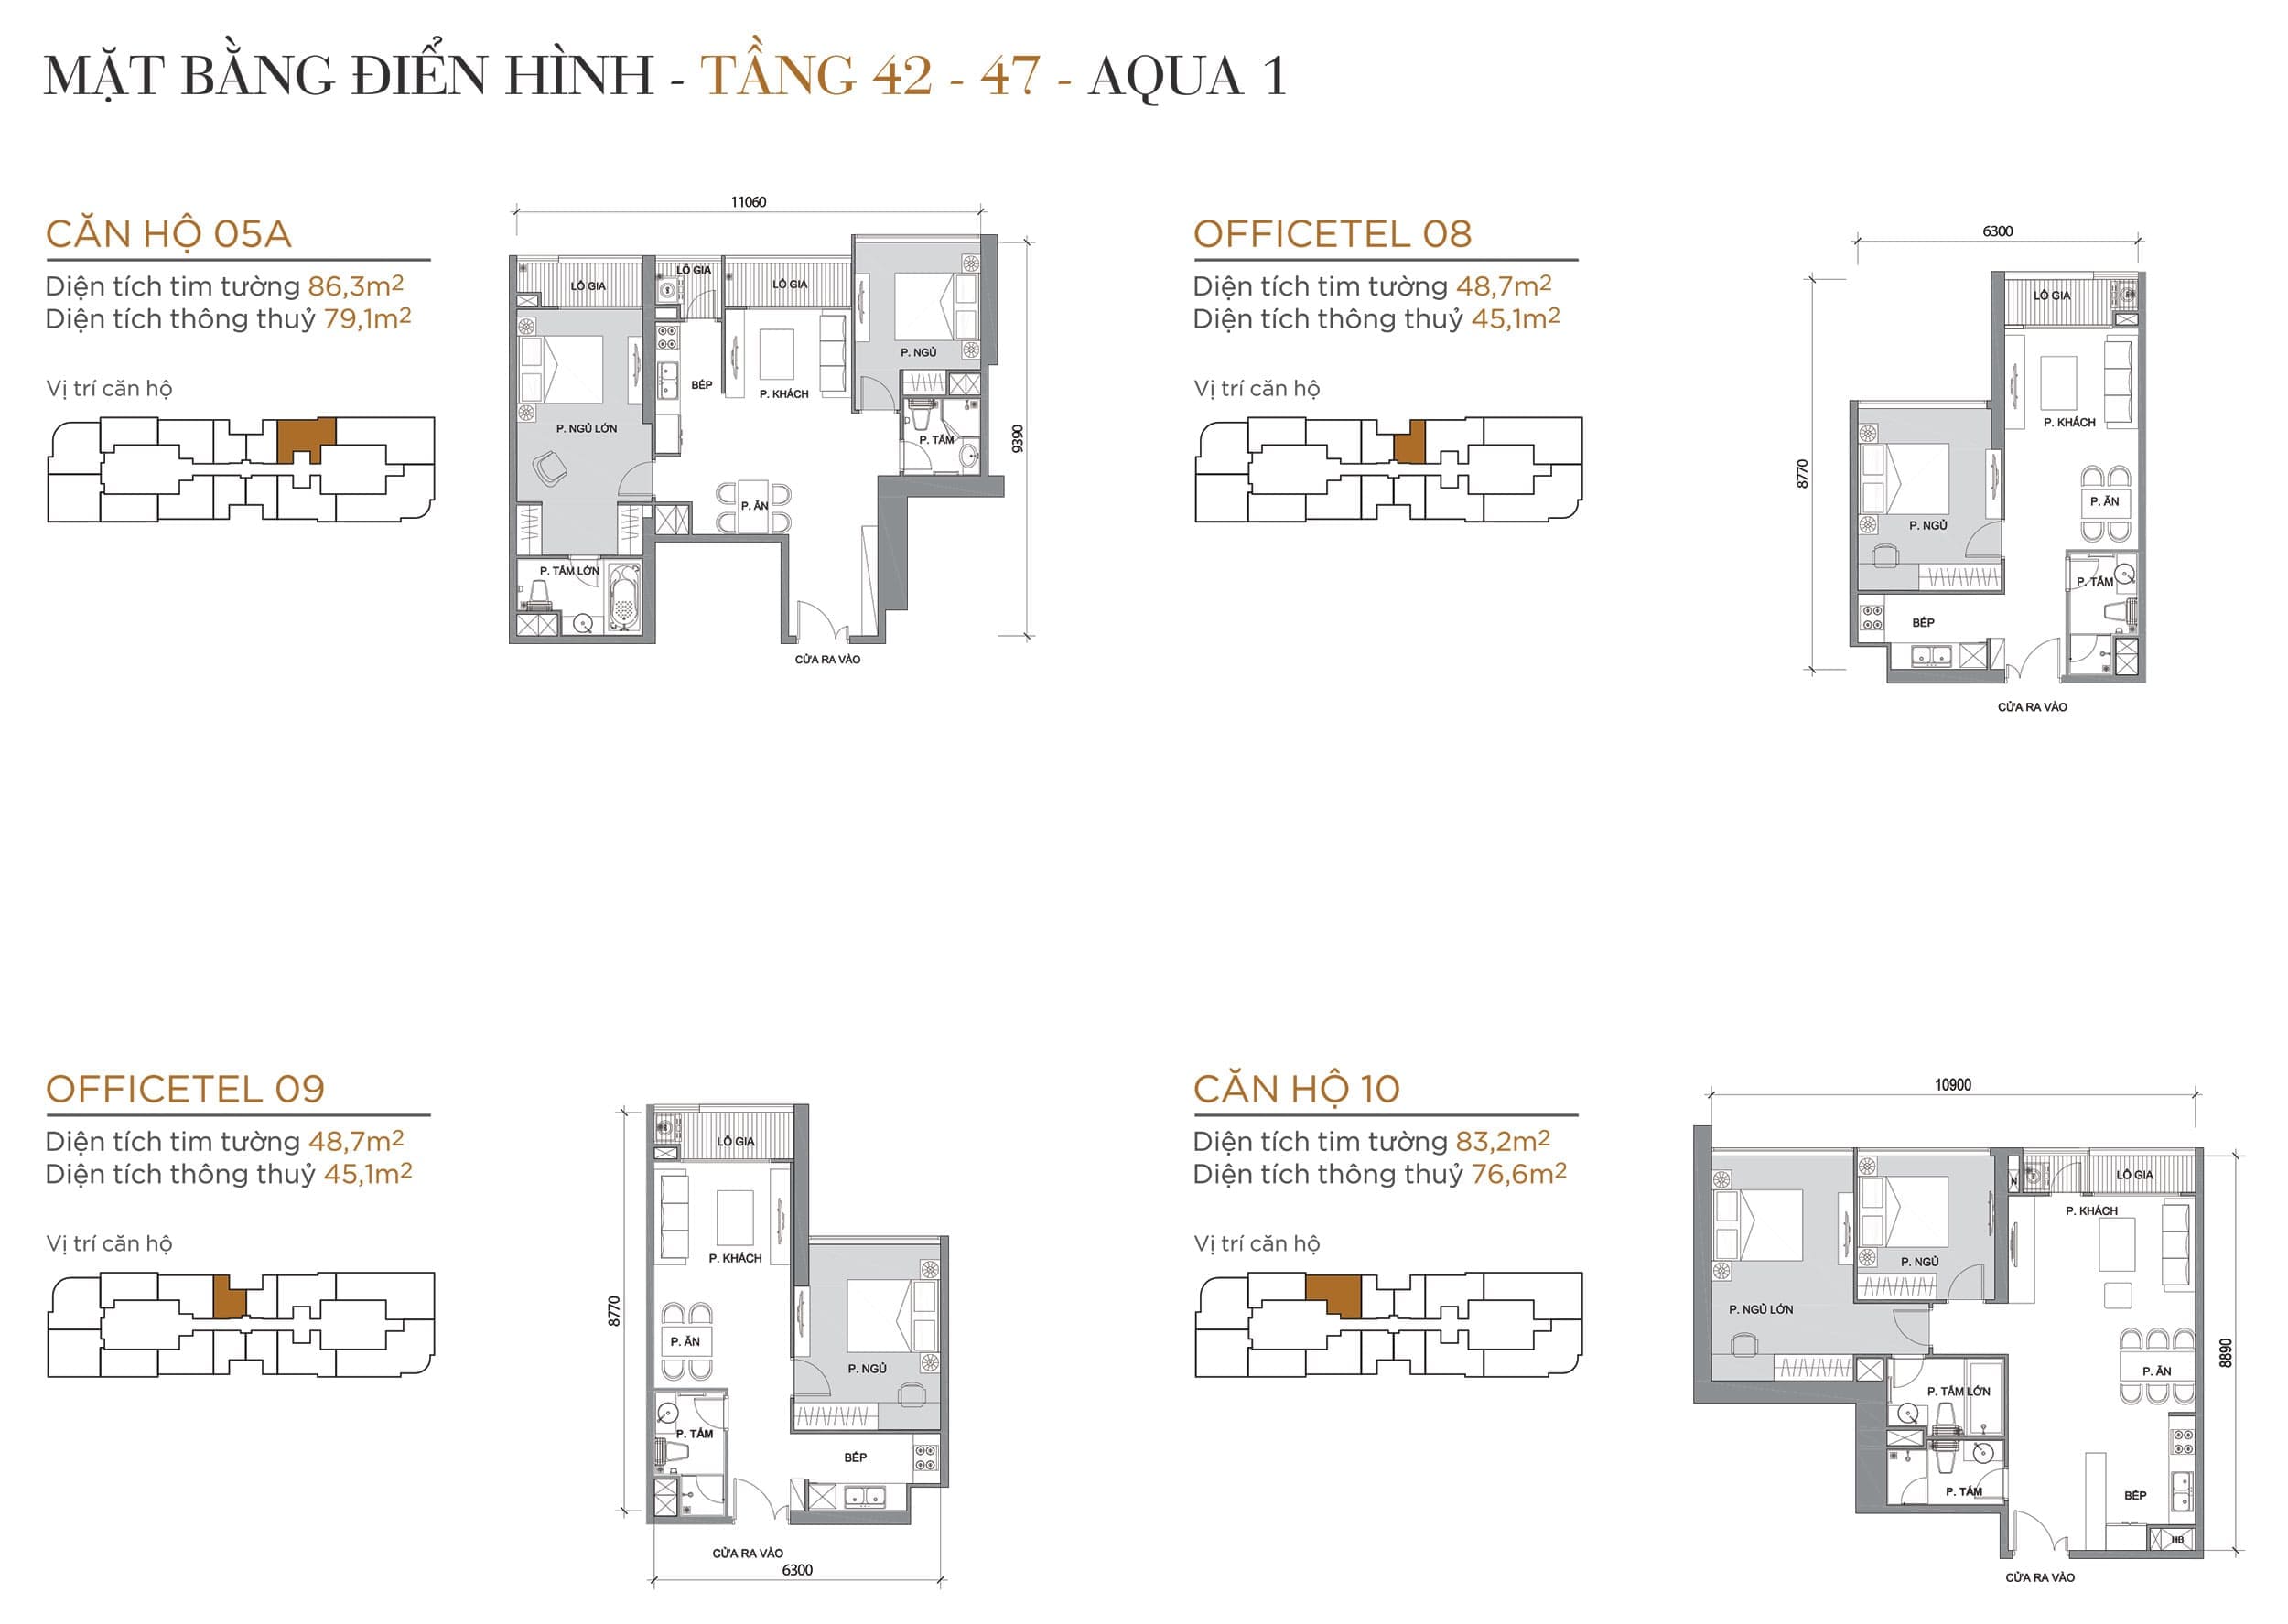 Layout căn hộ tầng 42 đến tầng 47 tòa Aqua 1 loại Căn hộ 05A, Officetel 08, Officetel 09, Căn hộ 10.